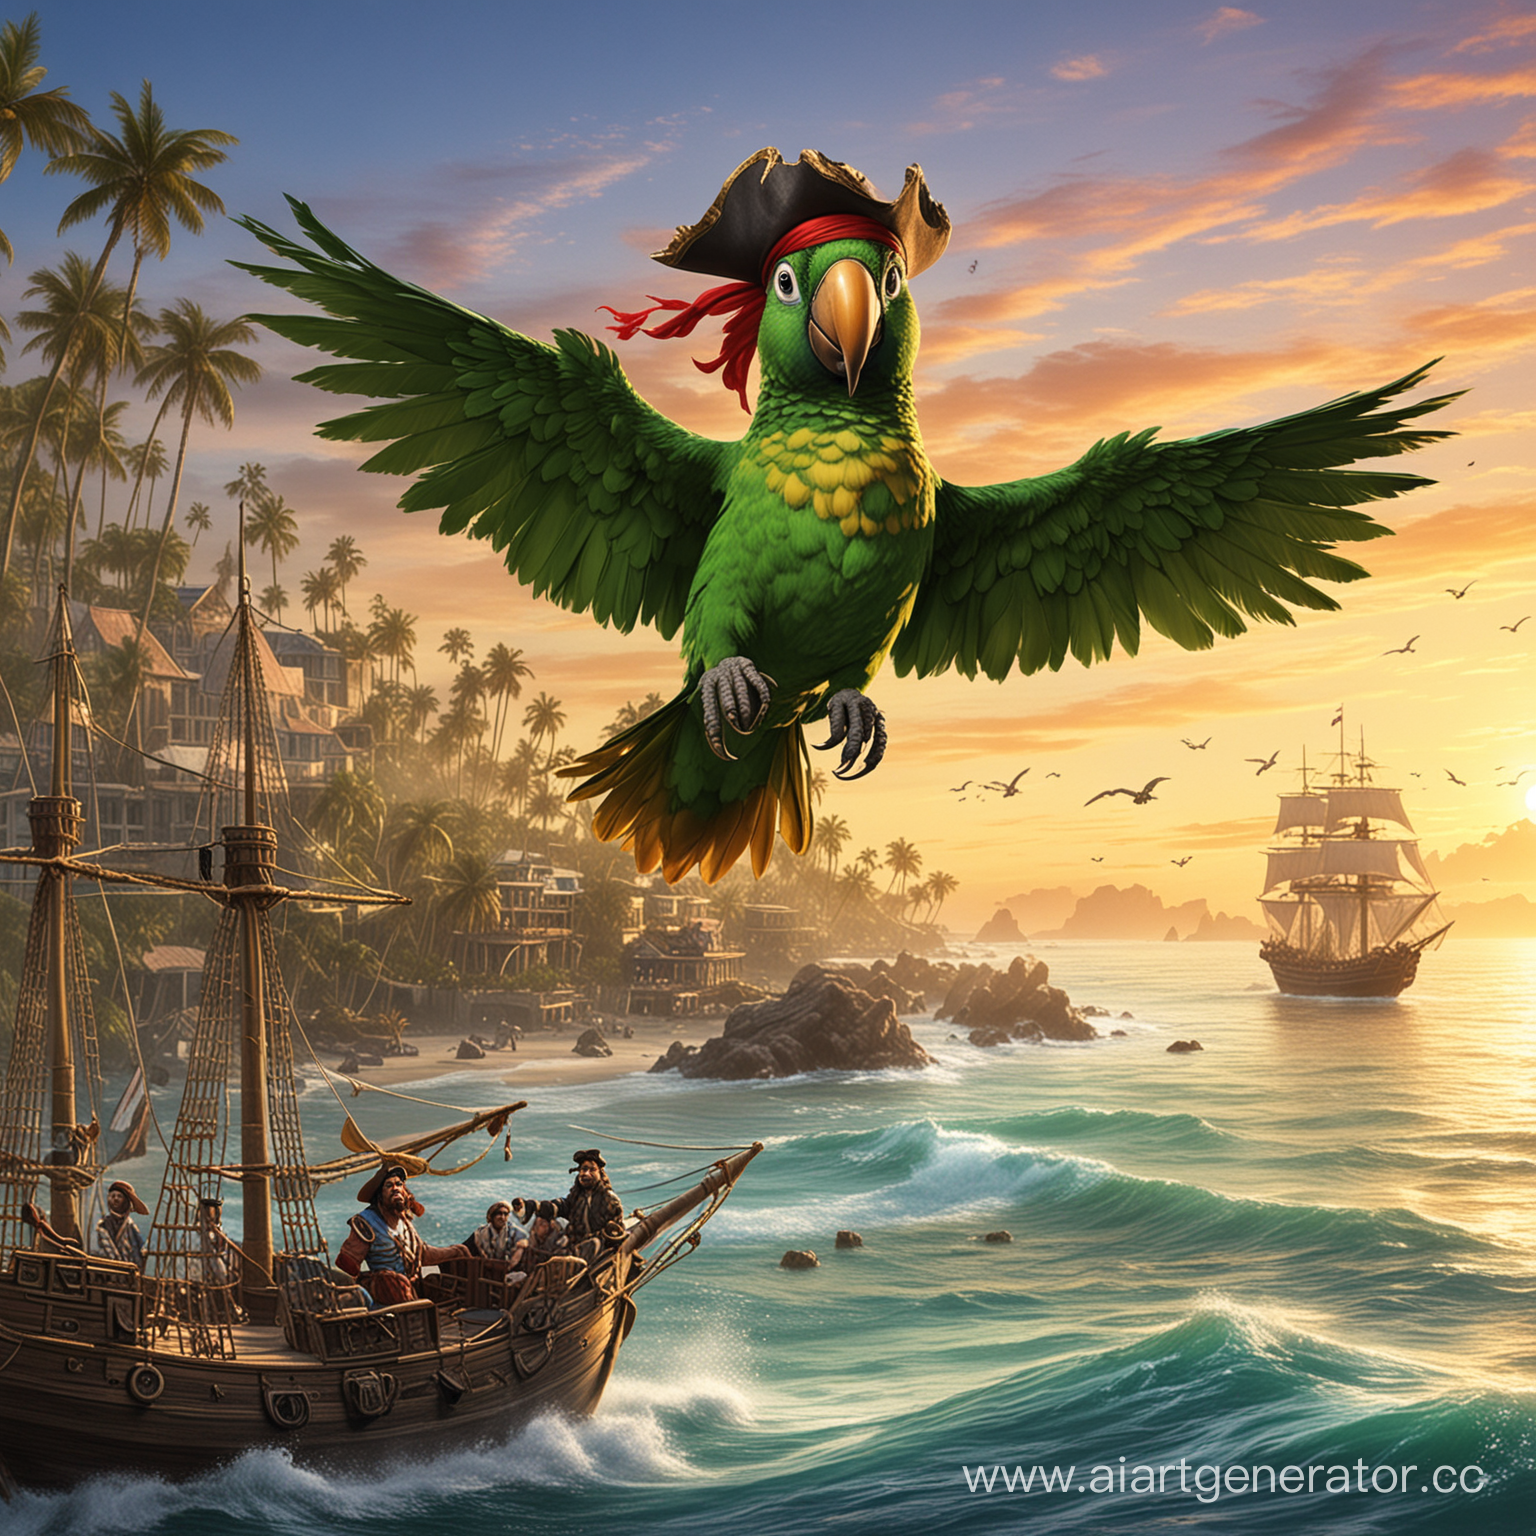 попугай-пират летит на остров сокровищ на остров сокровищ